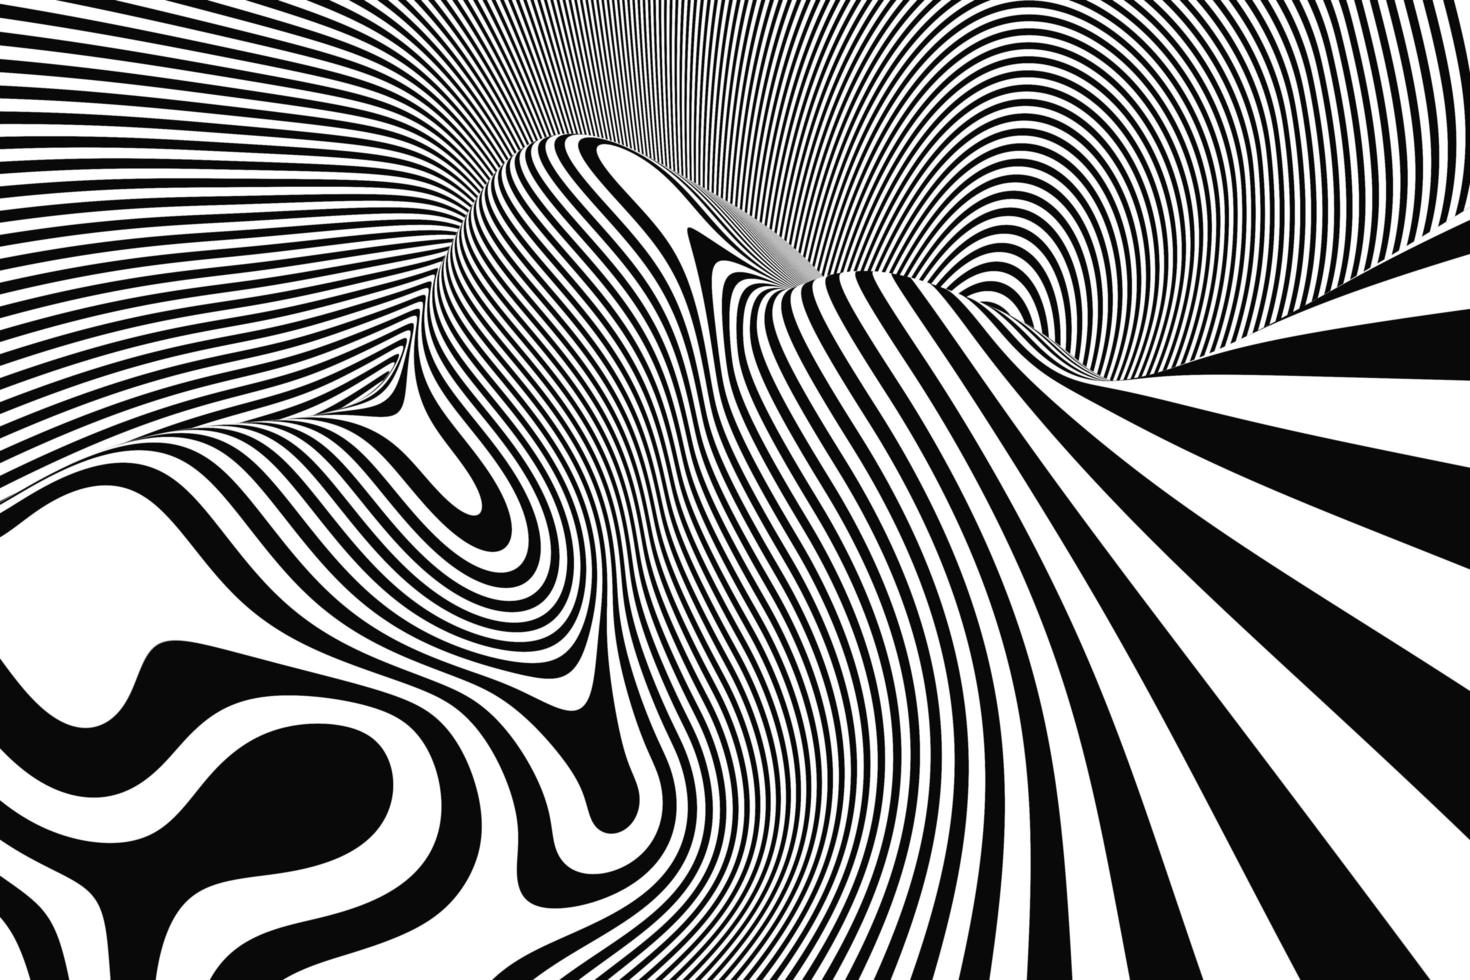 illusione ottica art. sfondo astratto liquido strisce ondulate. disegno del modello in bianco e nero con linee fluide foto